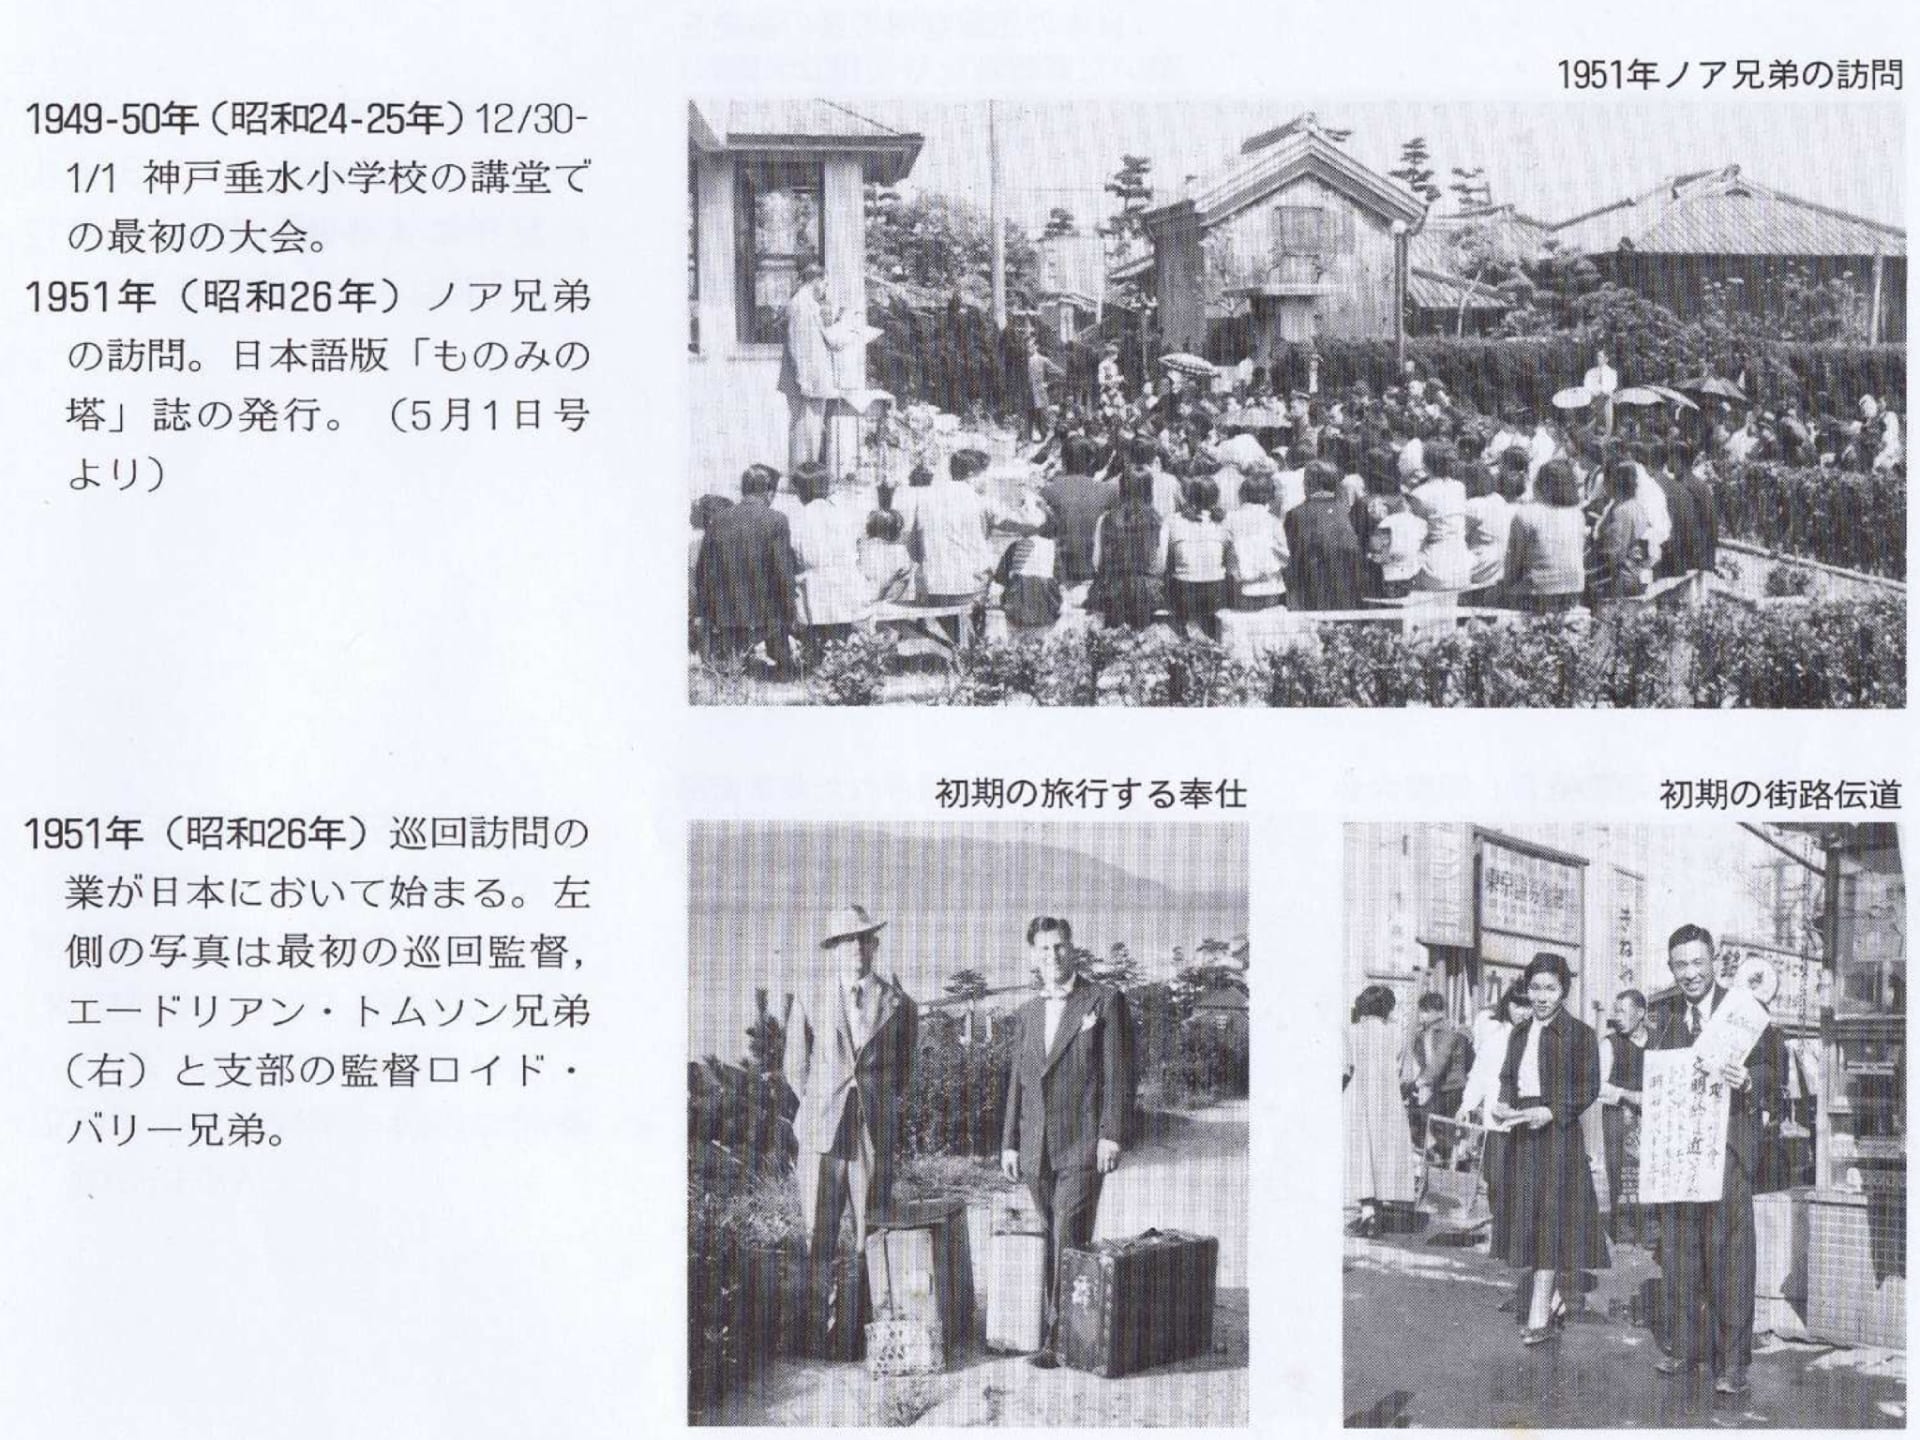 日本 支部 の 証人 エホバ エホバの証人日本支部ベテルの食事